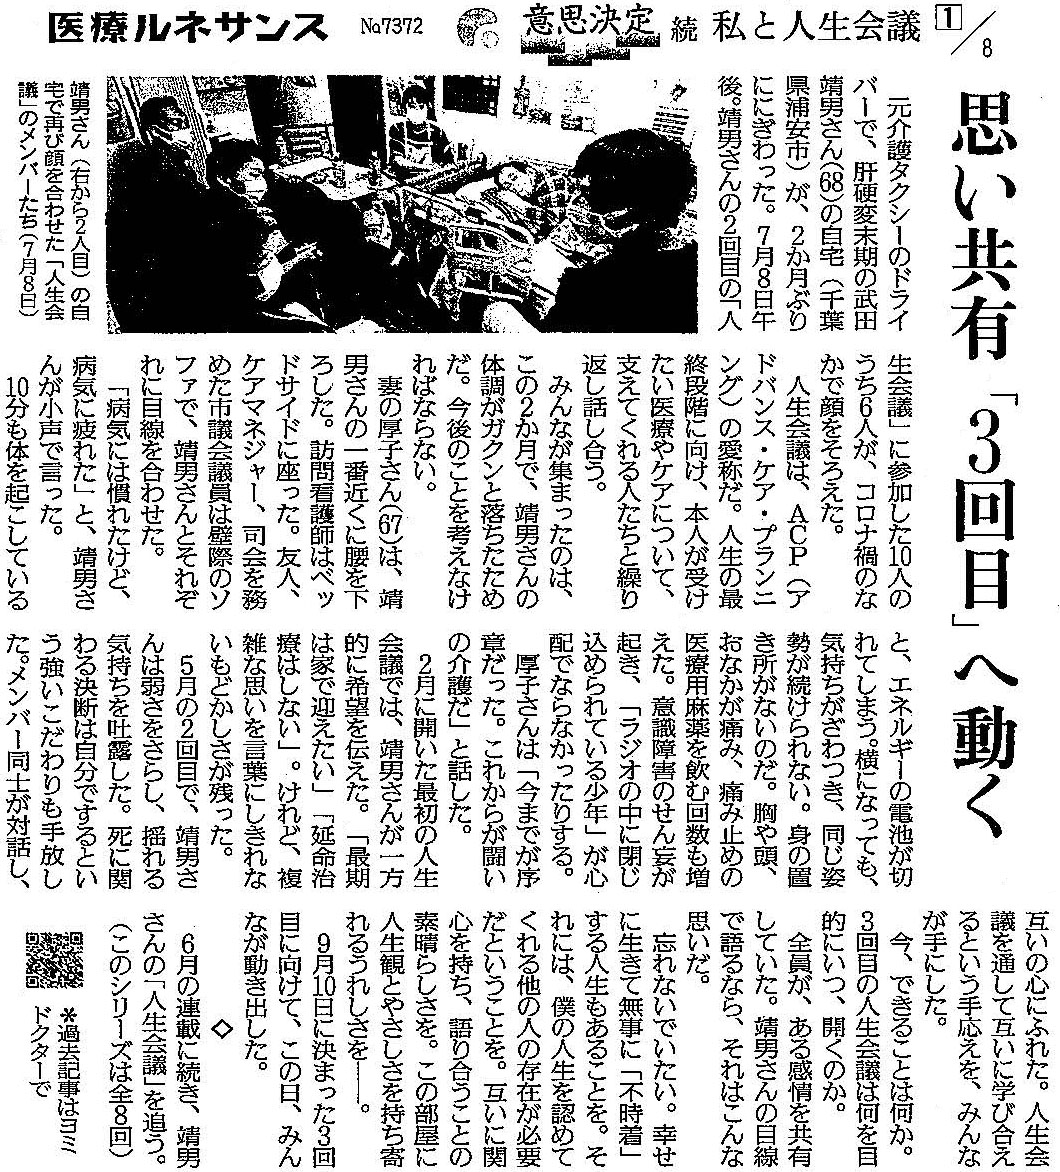 読売新聞 2020年9月23日掲載記事